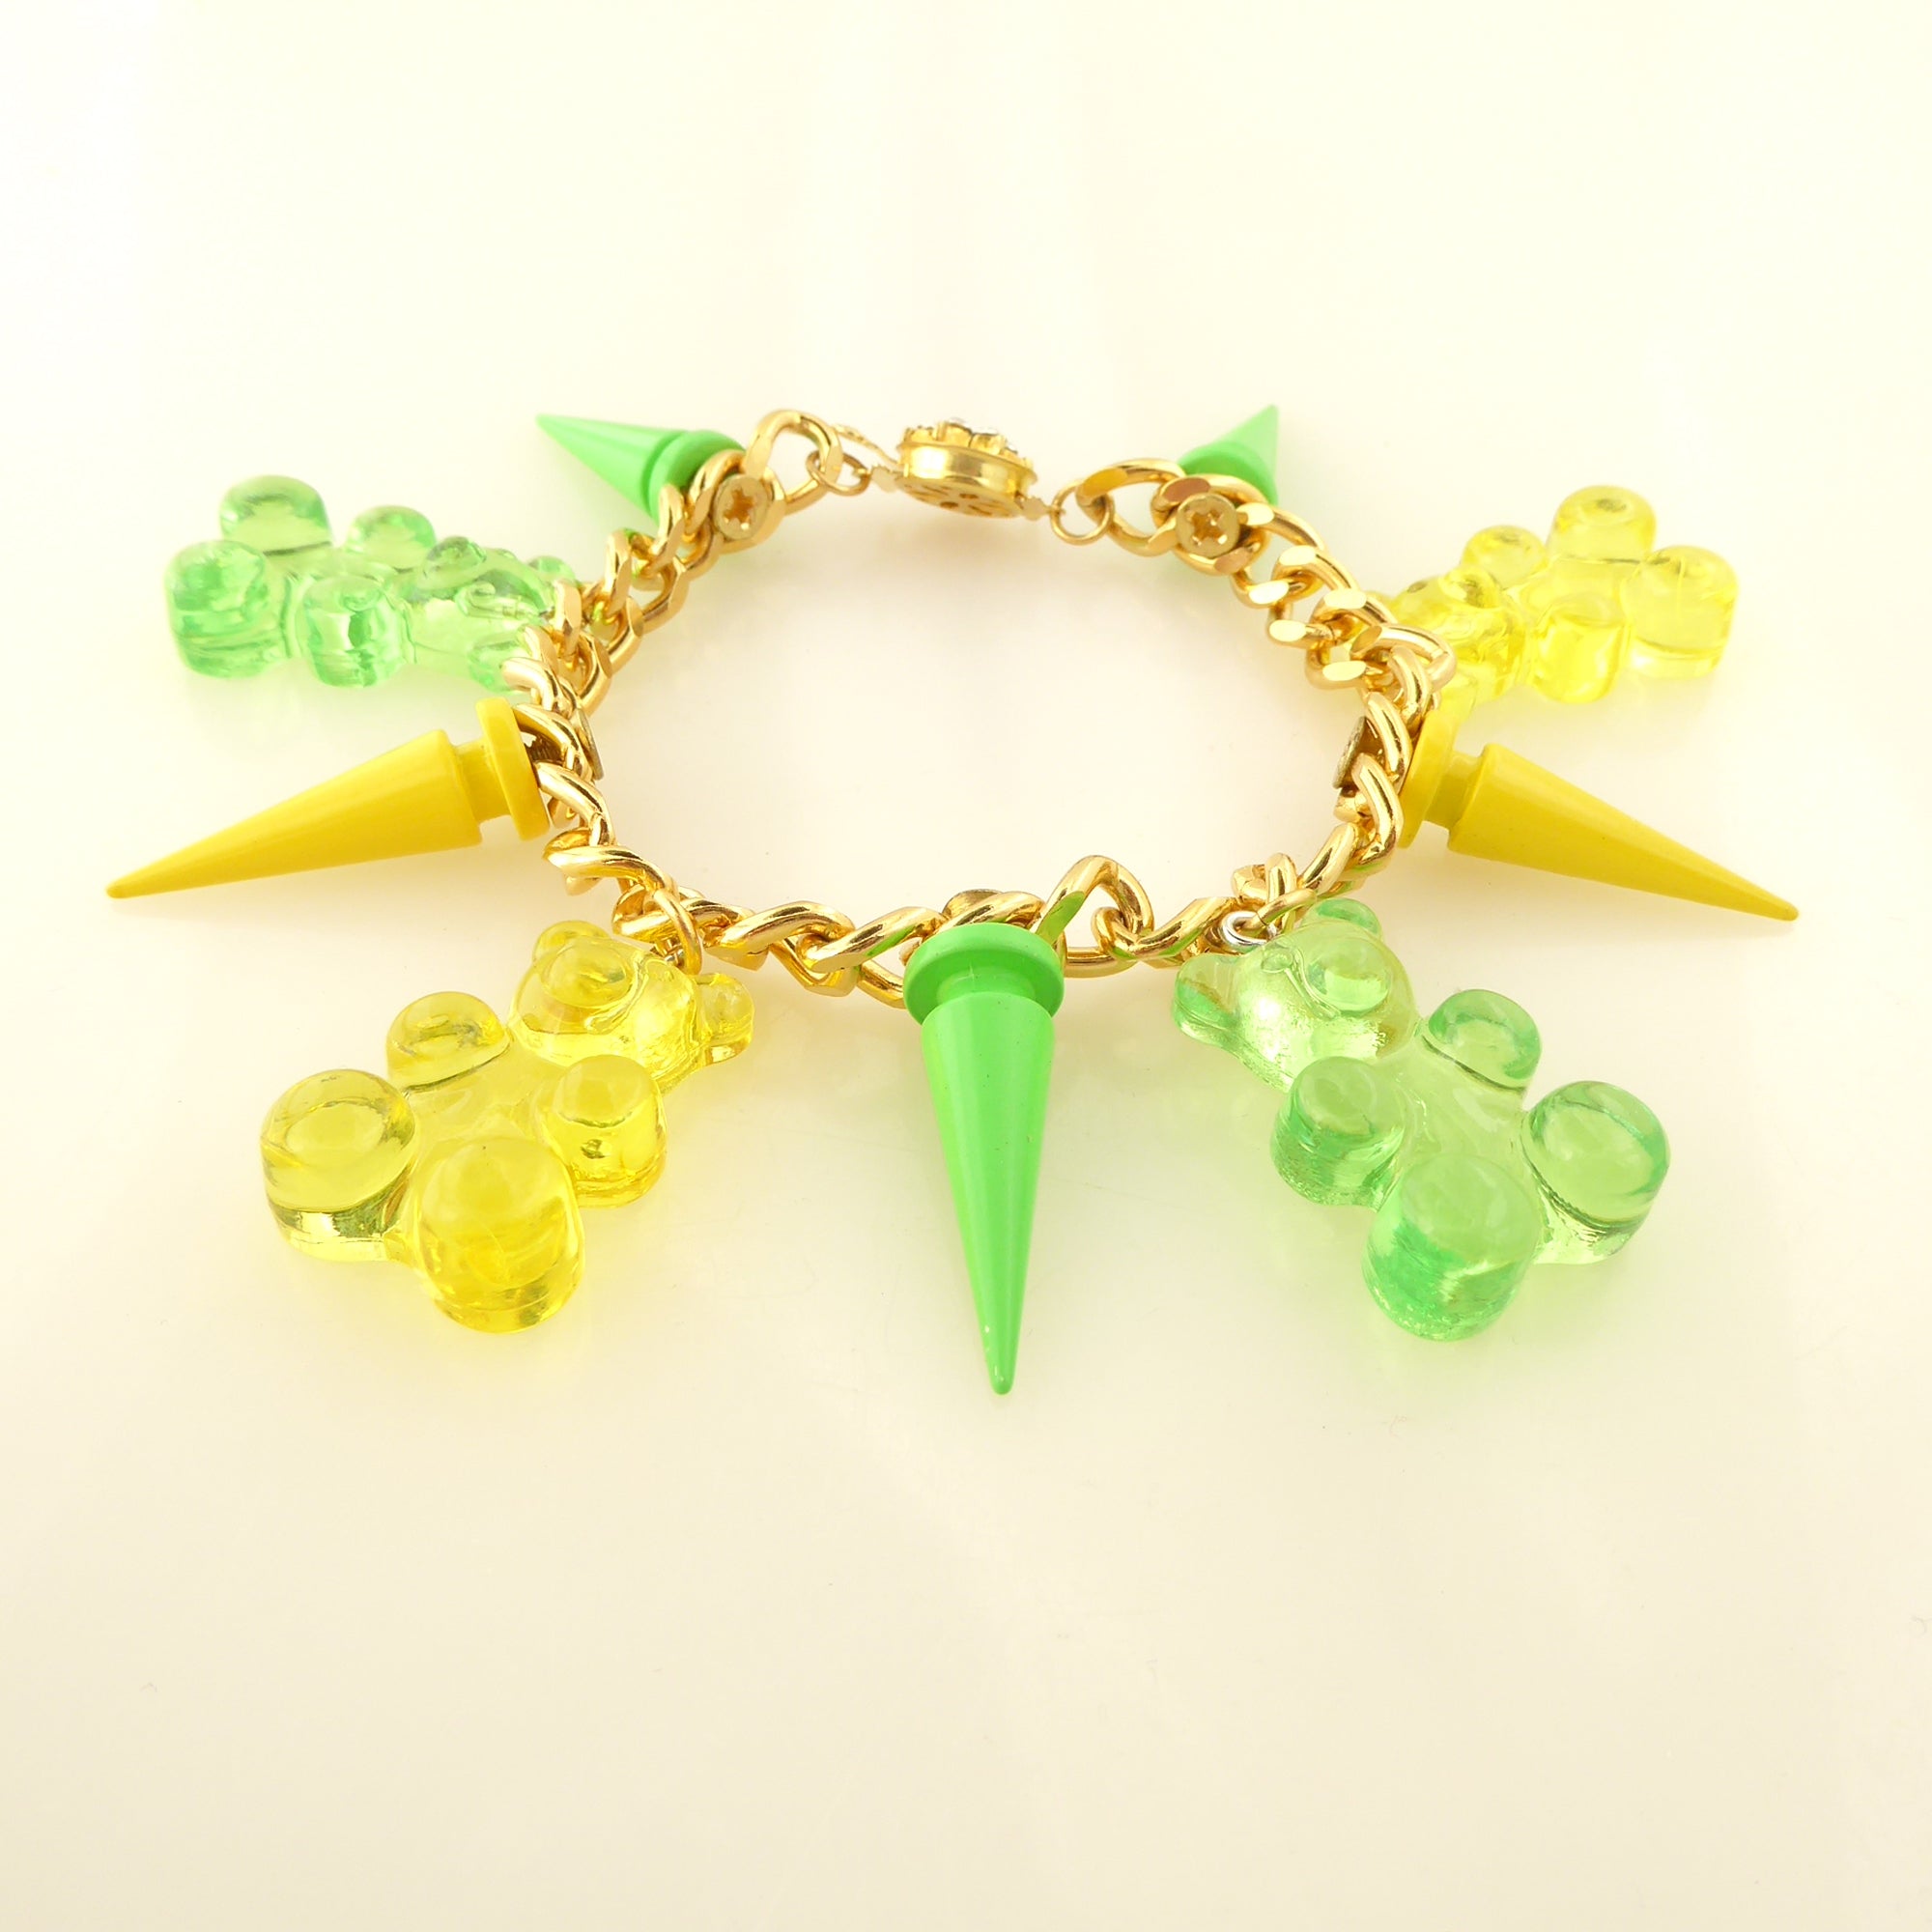 Gummy bear spike bracelet by Jenny Dayco 3